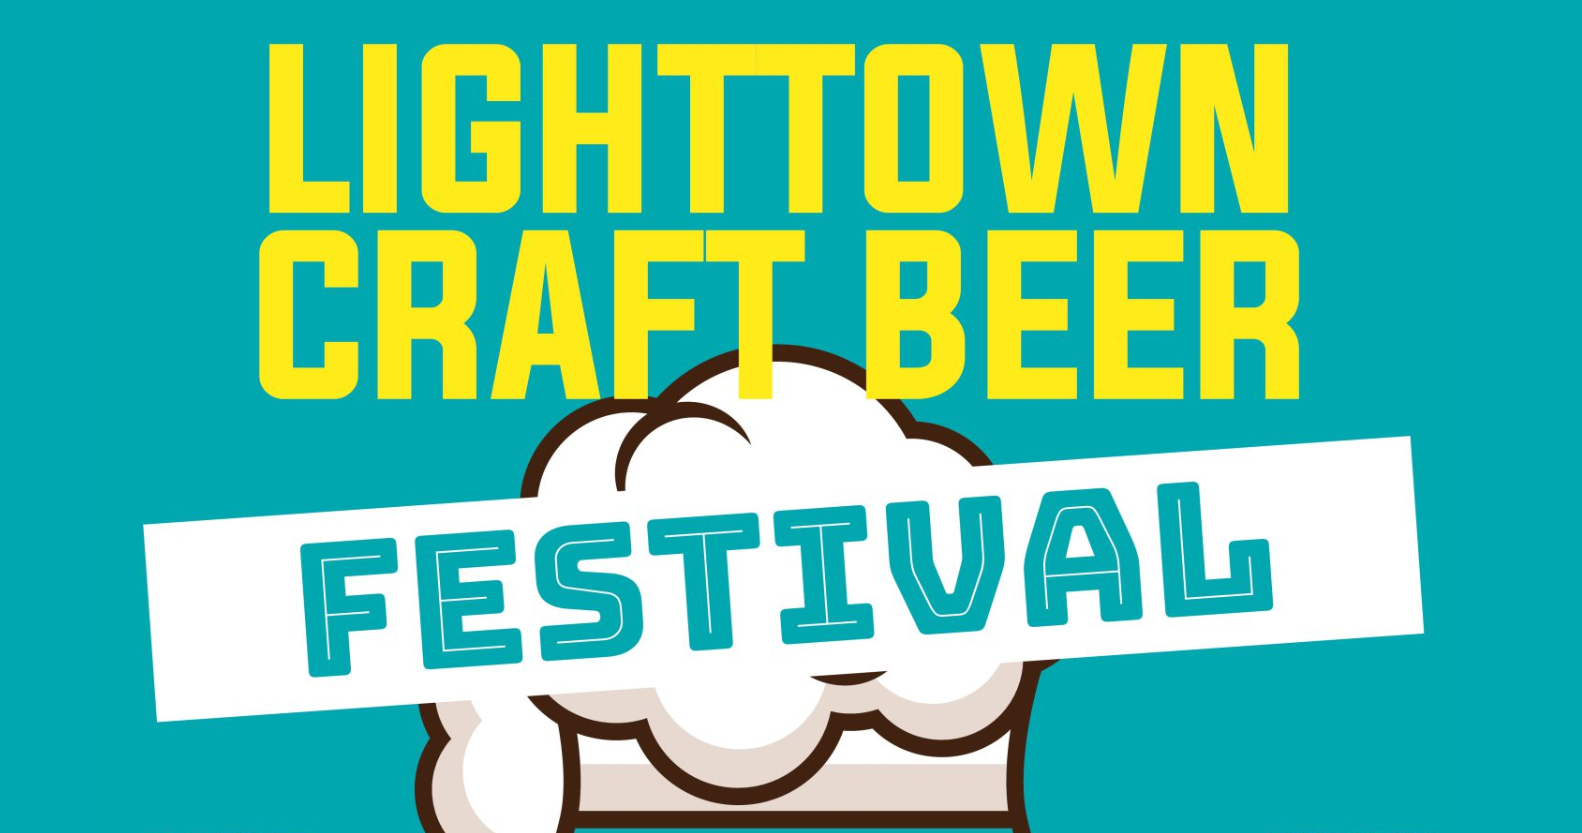 Lighttown Craft Beer festival